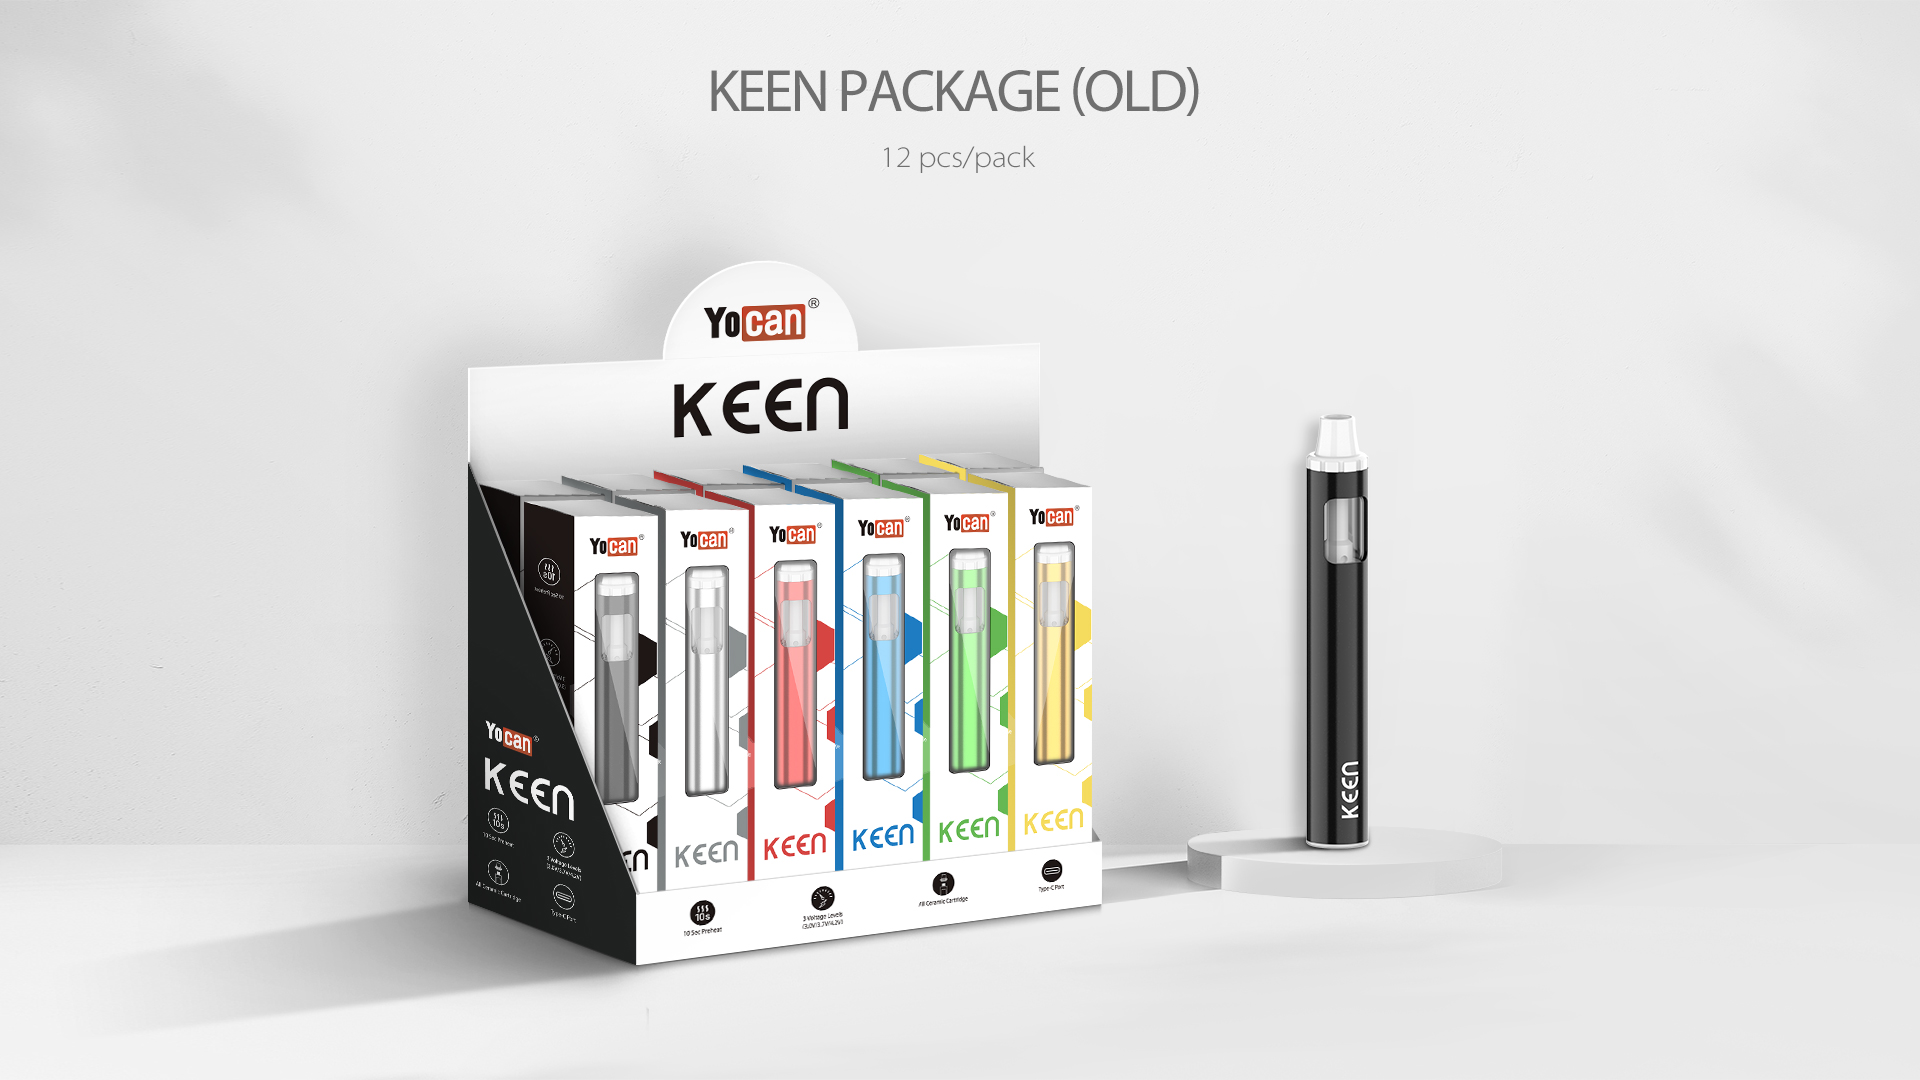 ocan Keen D8 Disposable Vape Pen package content.